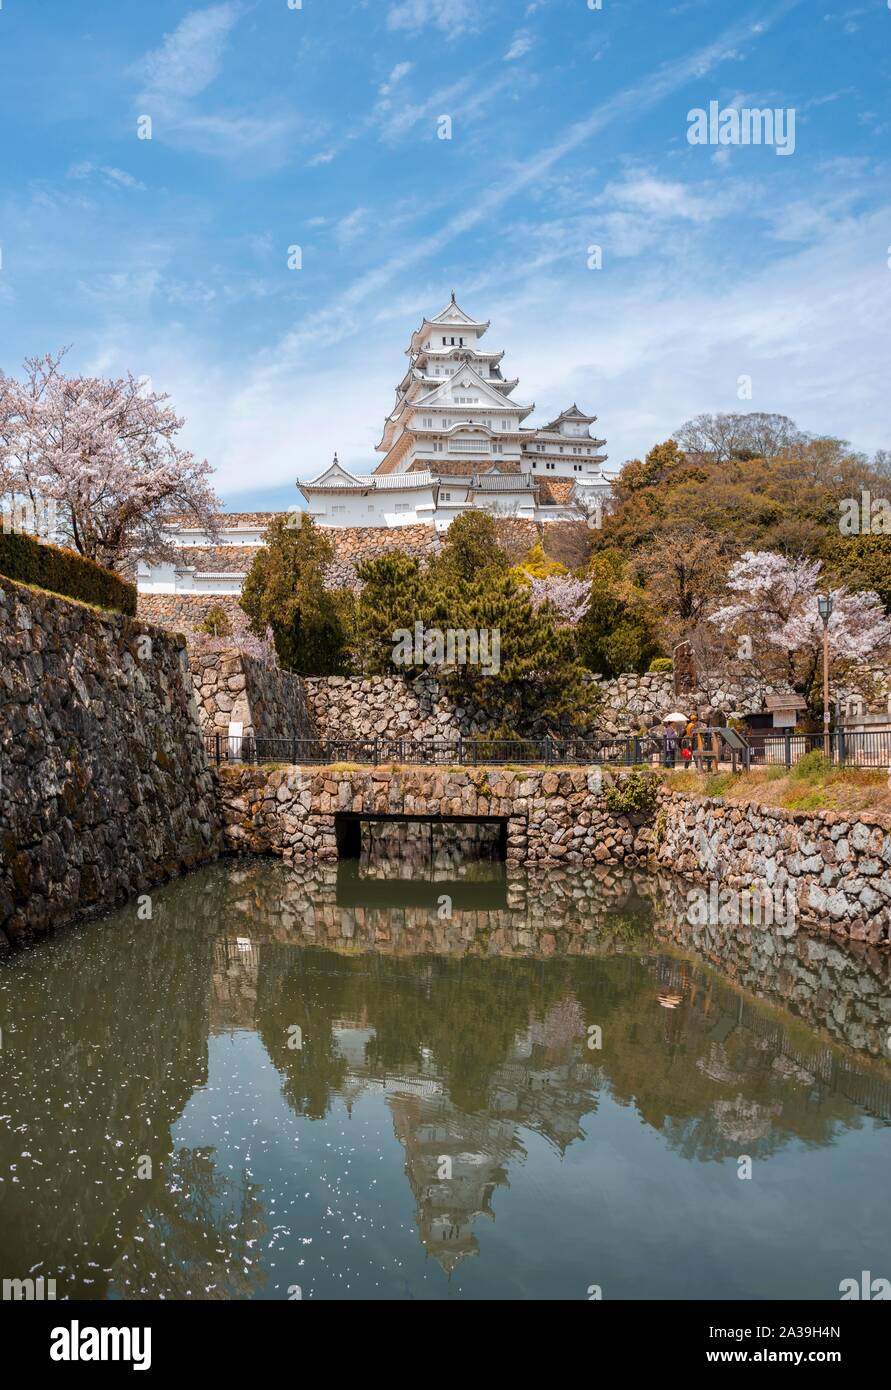 La réflexion de l'eau dans les douves du château de Himeji, Himeji-jo, Shirasagijo ou héron blanc, château Himeji, préfecture de Hyogo, Japon Banque D'Images